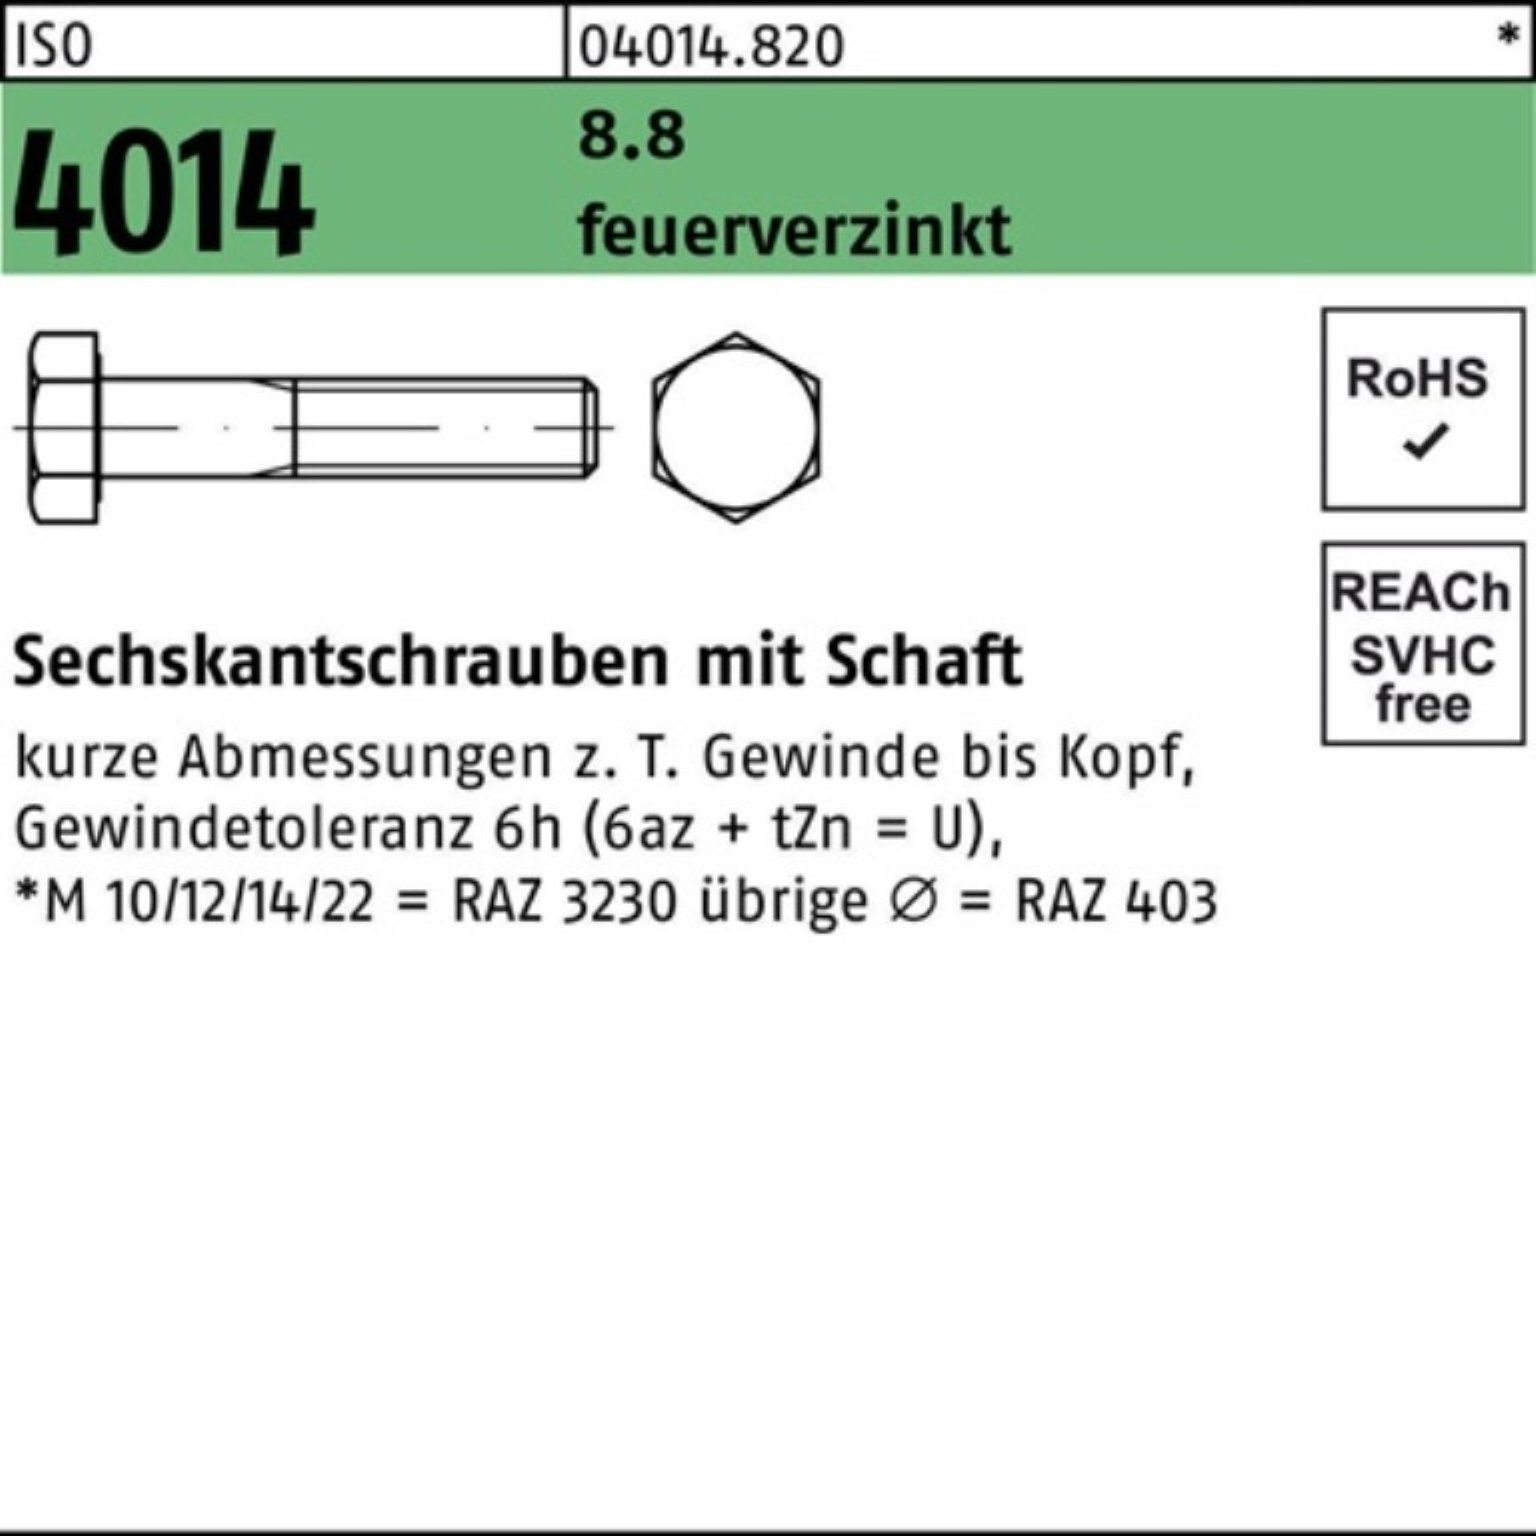 Bufab Sechskantschraube 100er Pack Sechskantschraube 100 4014 ISO feuerverz. 8.8 2 Schaft M20x